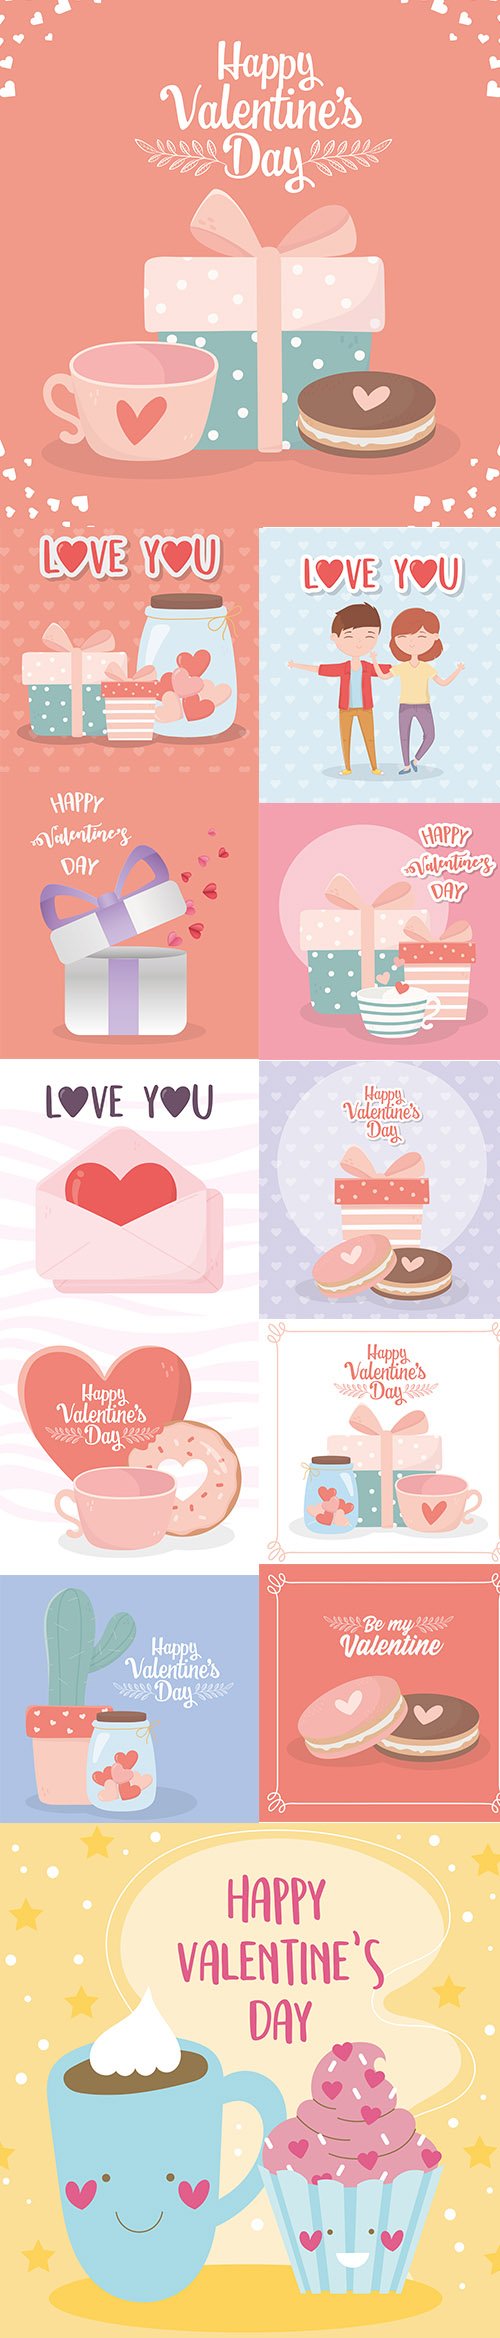 Happy Valentines Day Illustration Set Vol 5